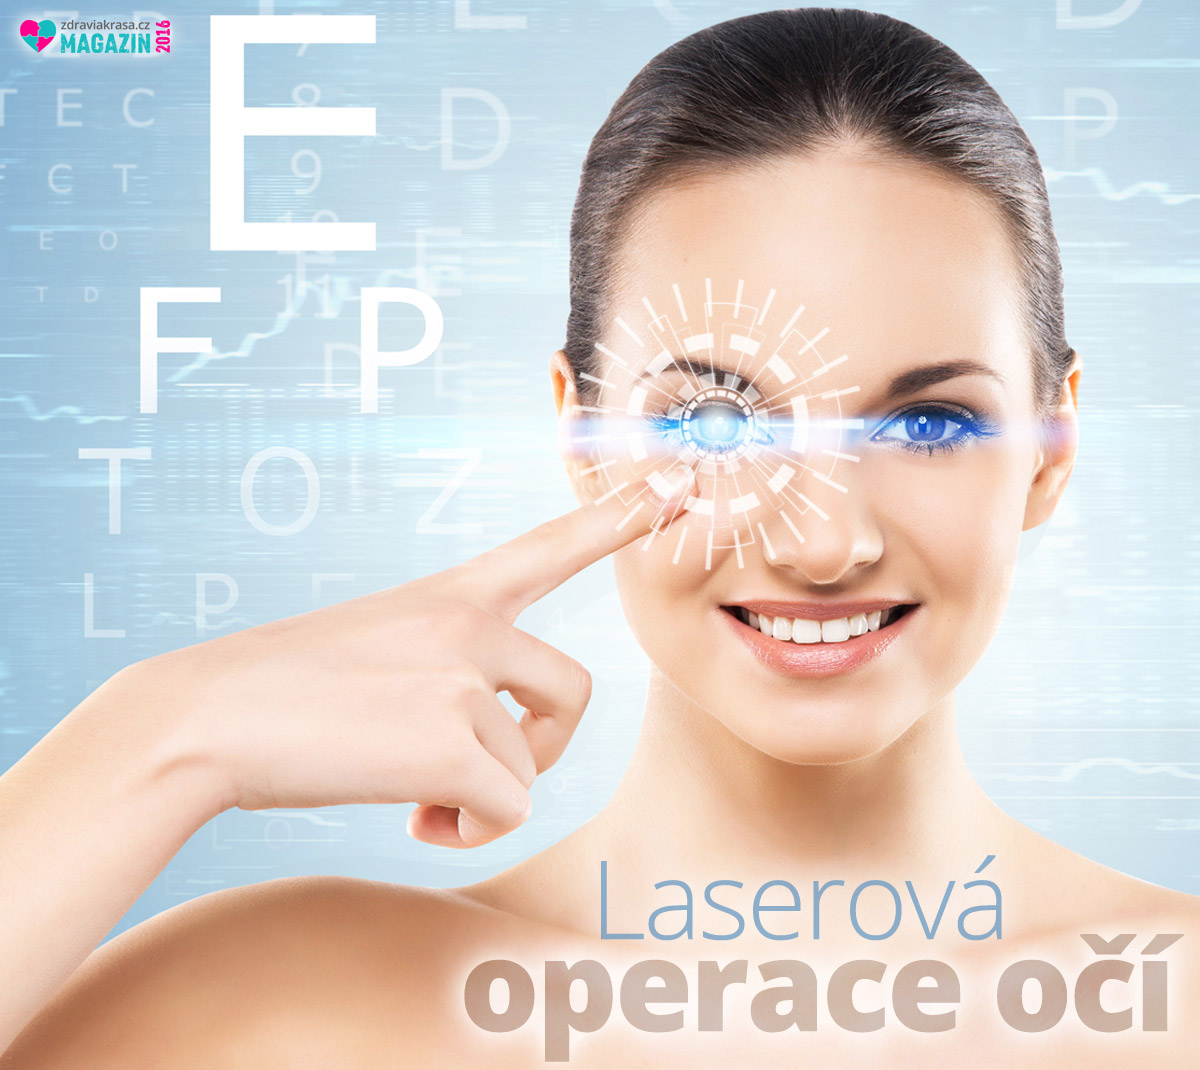 Moderní laserová operace očí je plnohodnotnou alternativou k nošení dioptrických brýlí a kontaktních čoček. Krátkozrakost umí vyřešit trvale. 